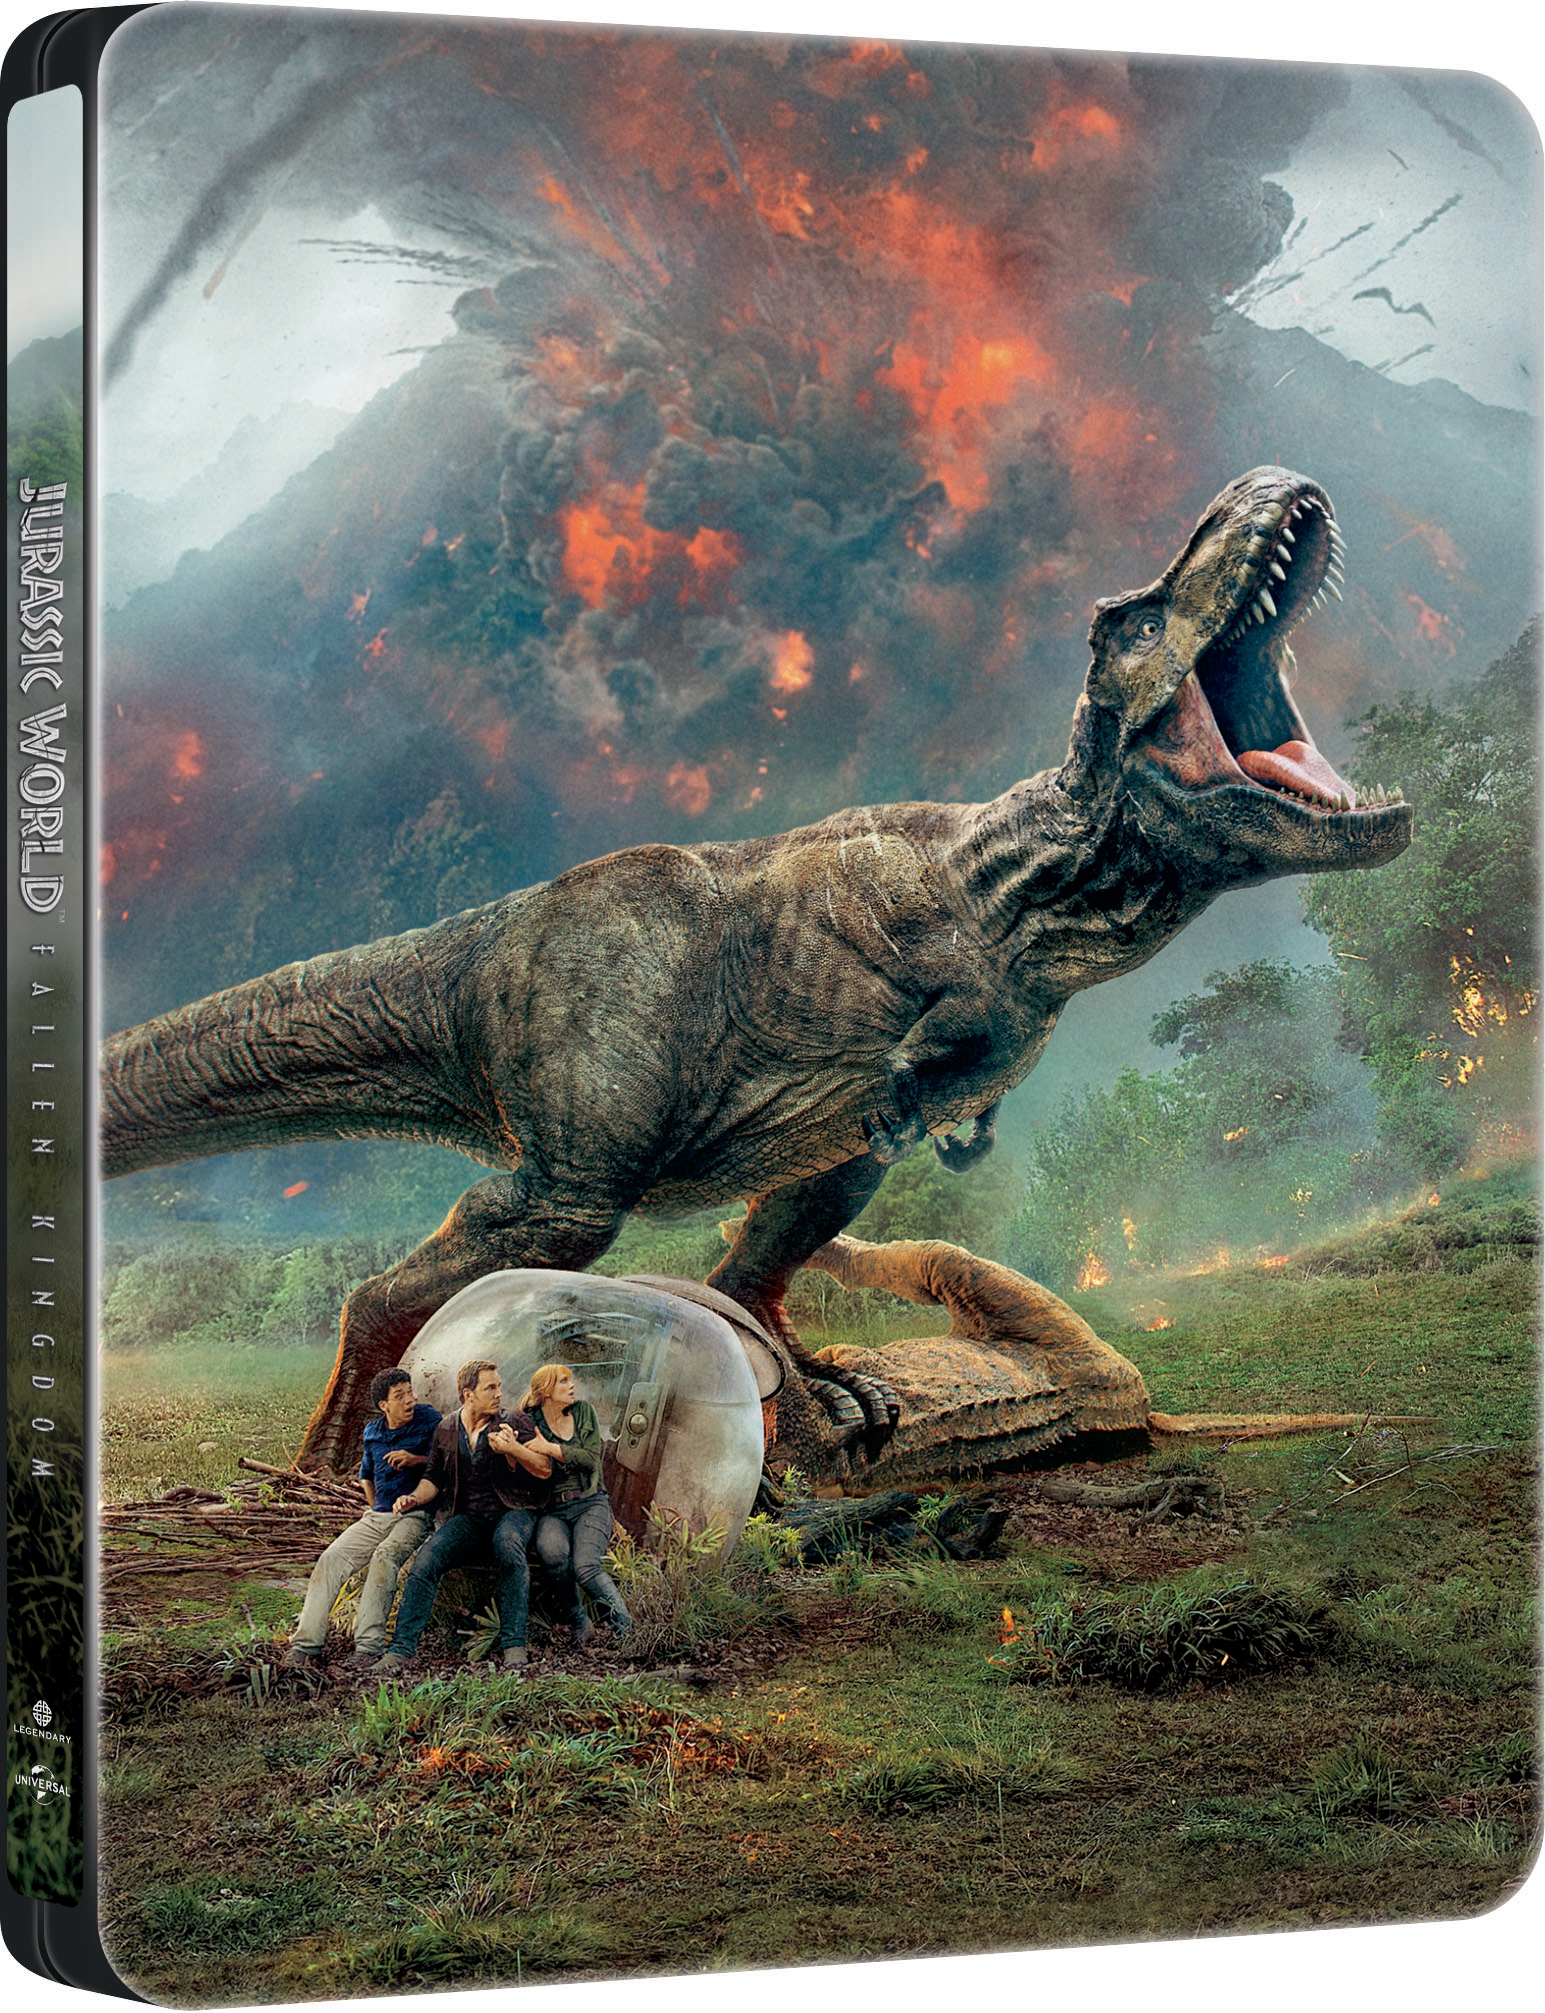 Jurassic World: Fallen Kingdom download the new